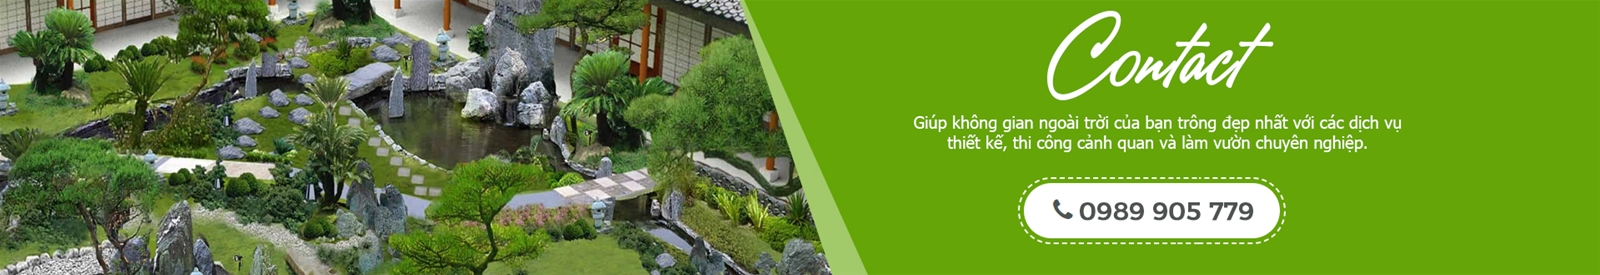 Bạn cần làm một khu vườn Nhật đẹp? Gọi điện cho chúng tôi: 0989 905 779